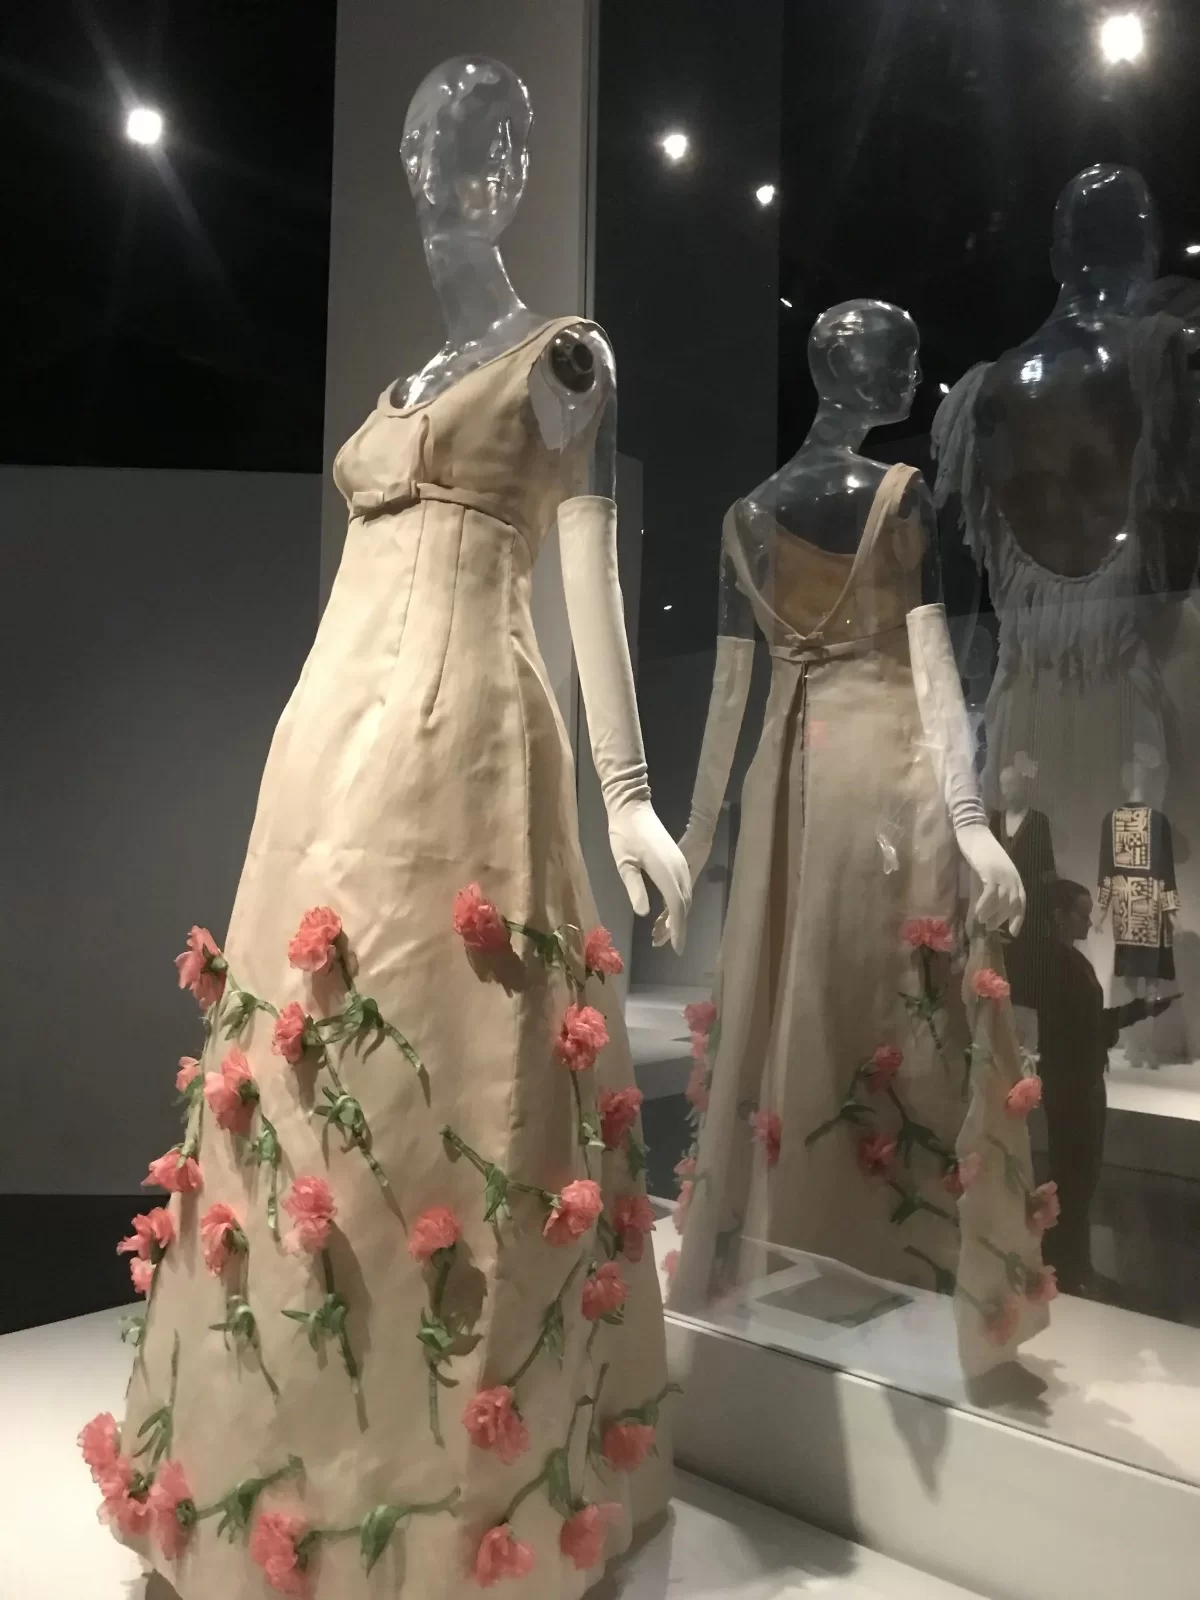 Vestido confeccionado por Ann Lowe está presente na exposição do museu em NY. (Reprodução/WWD)